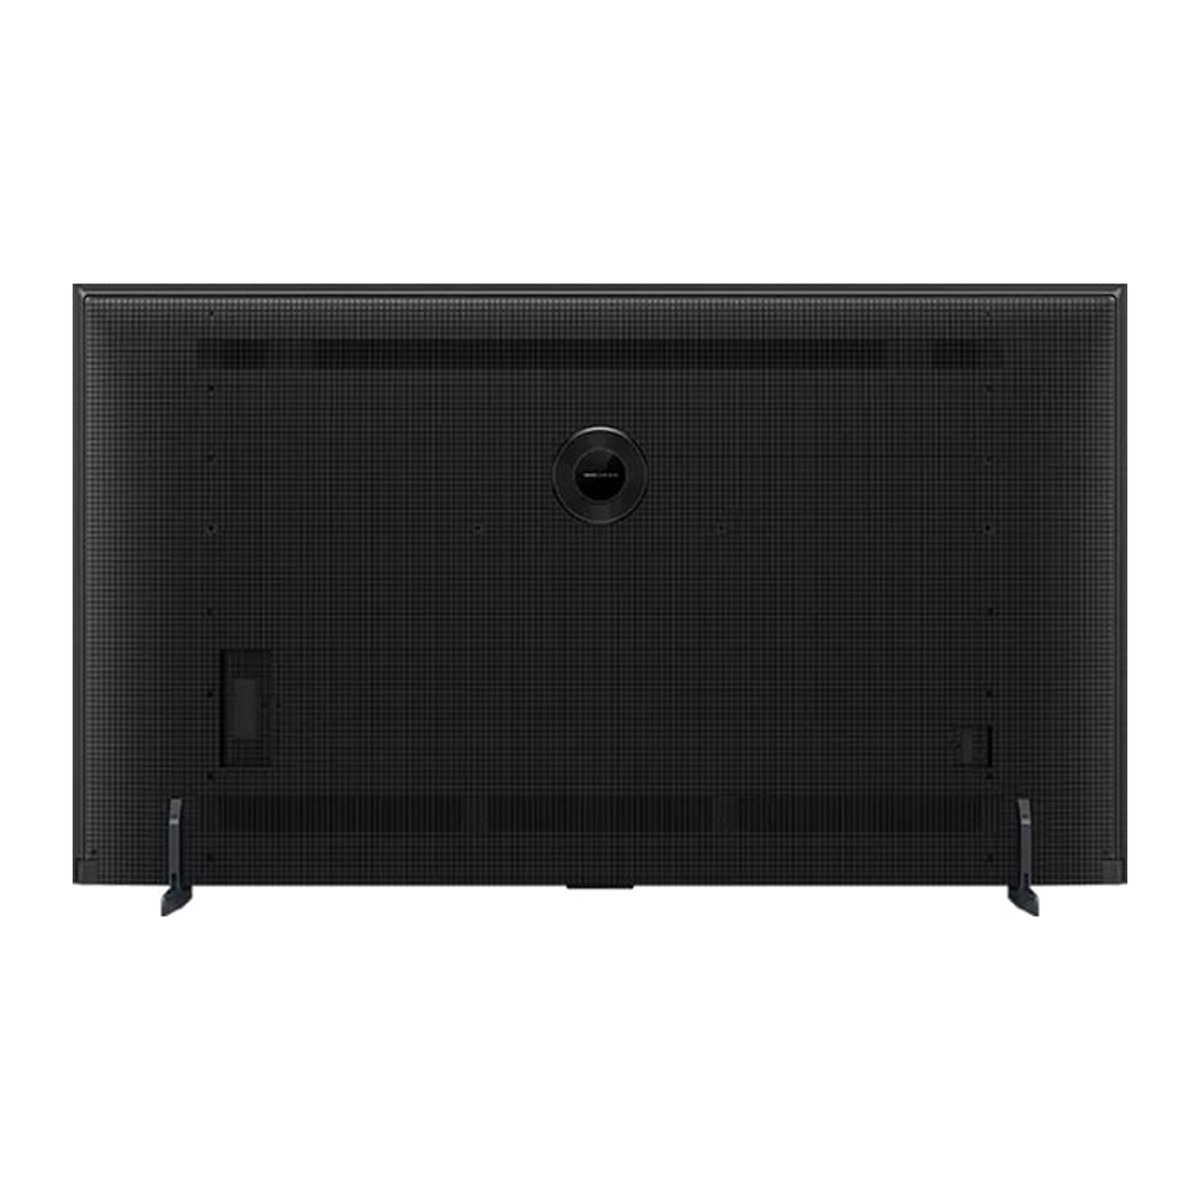 TCL 65 inches 4K Google Smart QD Series Mini LED TV, 65C755